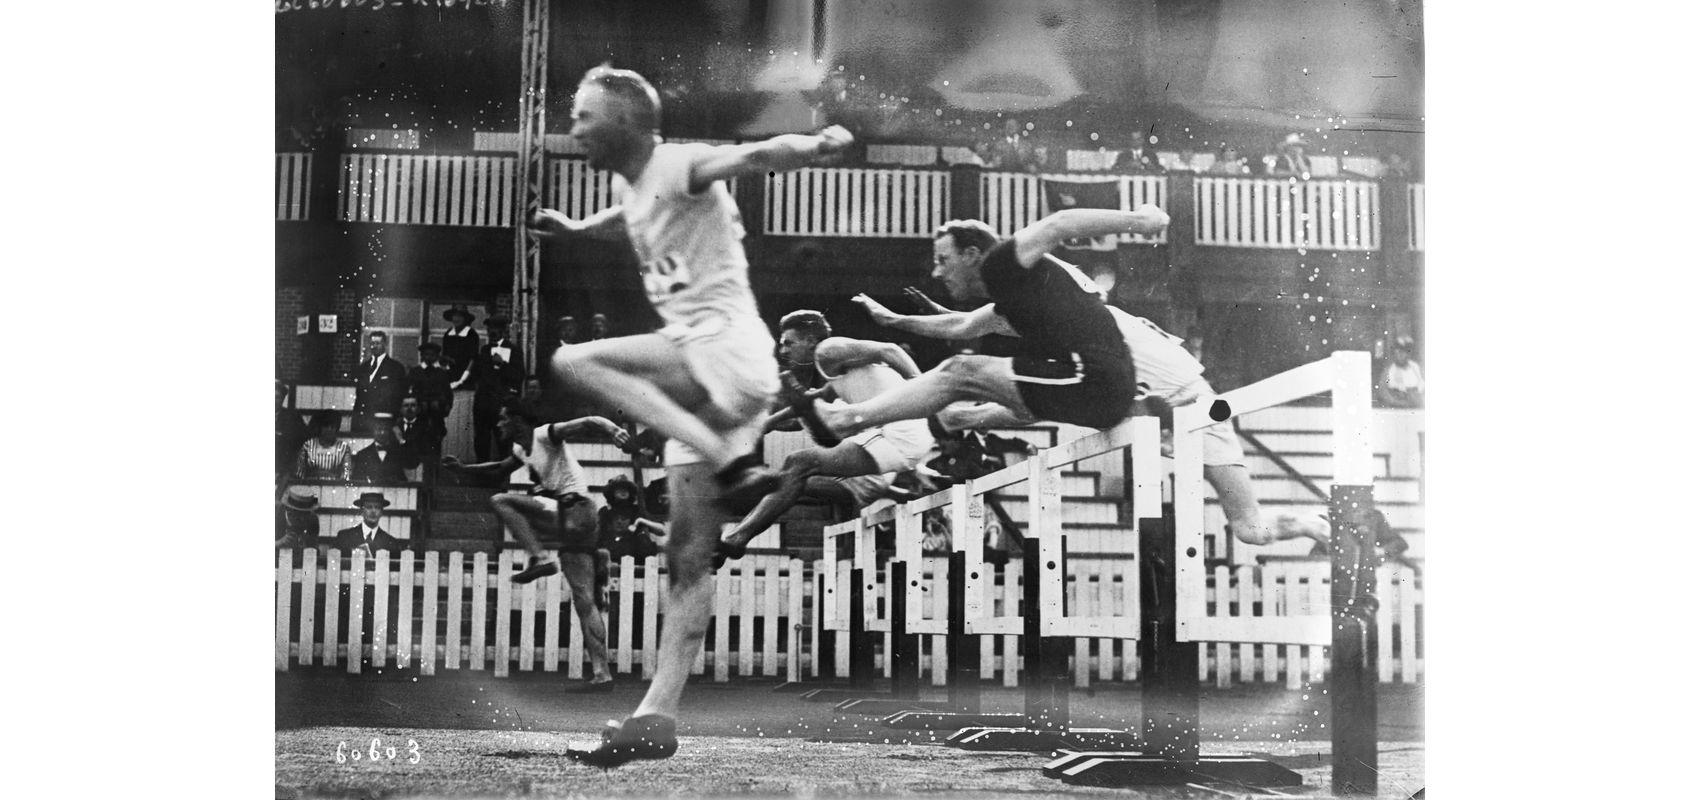 Anvers, 110 m haies – Jeux olympiques – Agence Rol - 1920 - BnF, département des Estampes et de la photographie